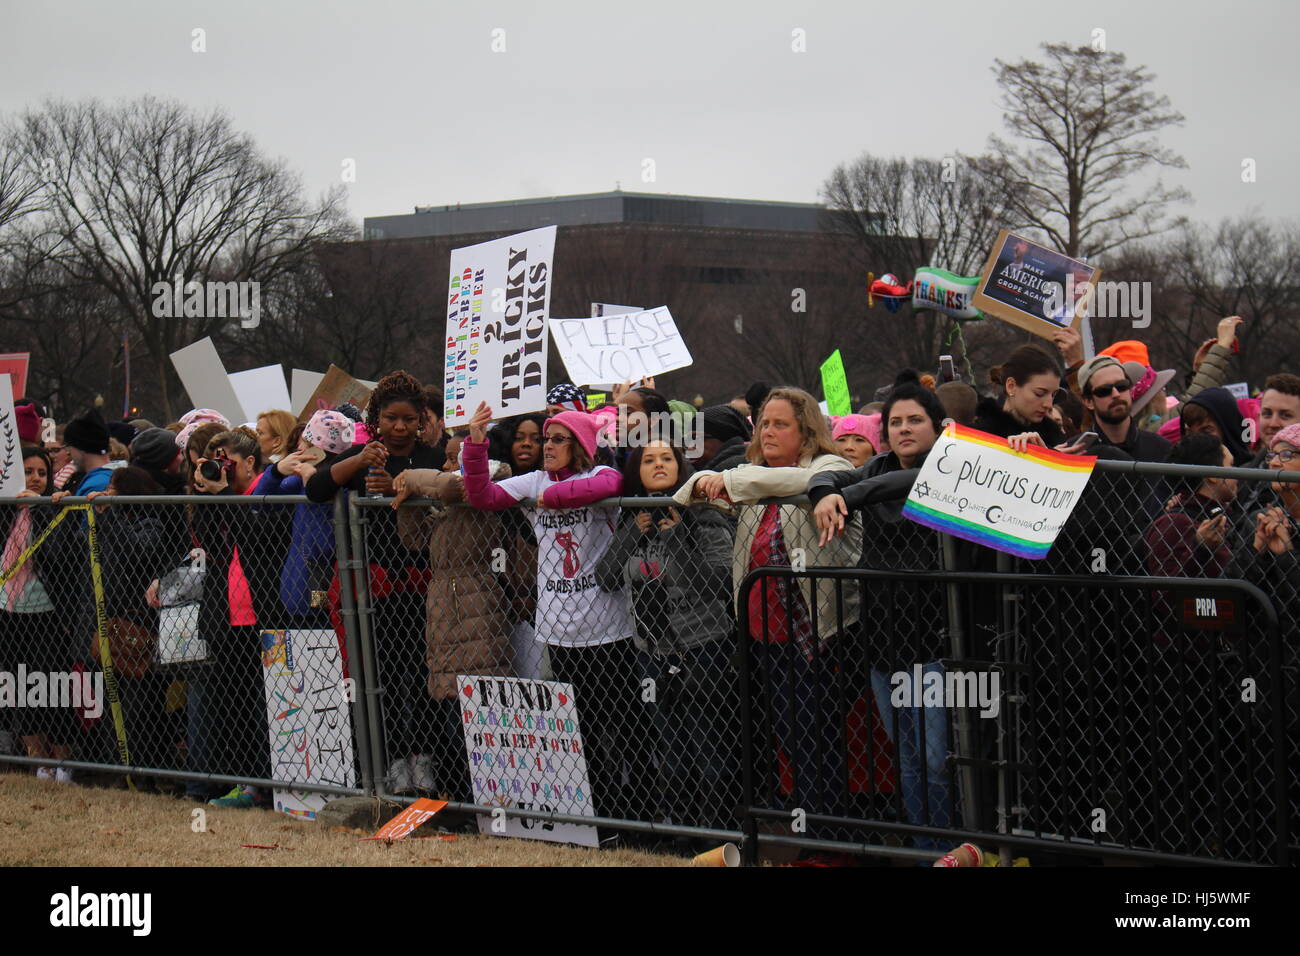 Distrikt von Columbia, USA. 21 Jan, 2017. Die demonstranten Line up unter einem Zaun auf dem Rasen des Weißen Hauses. Stockfoto